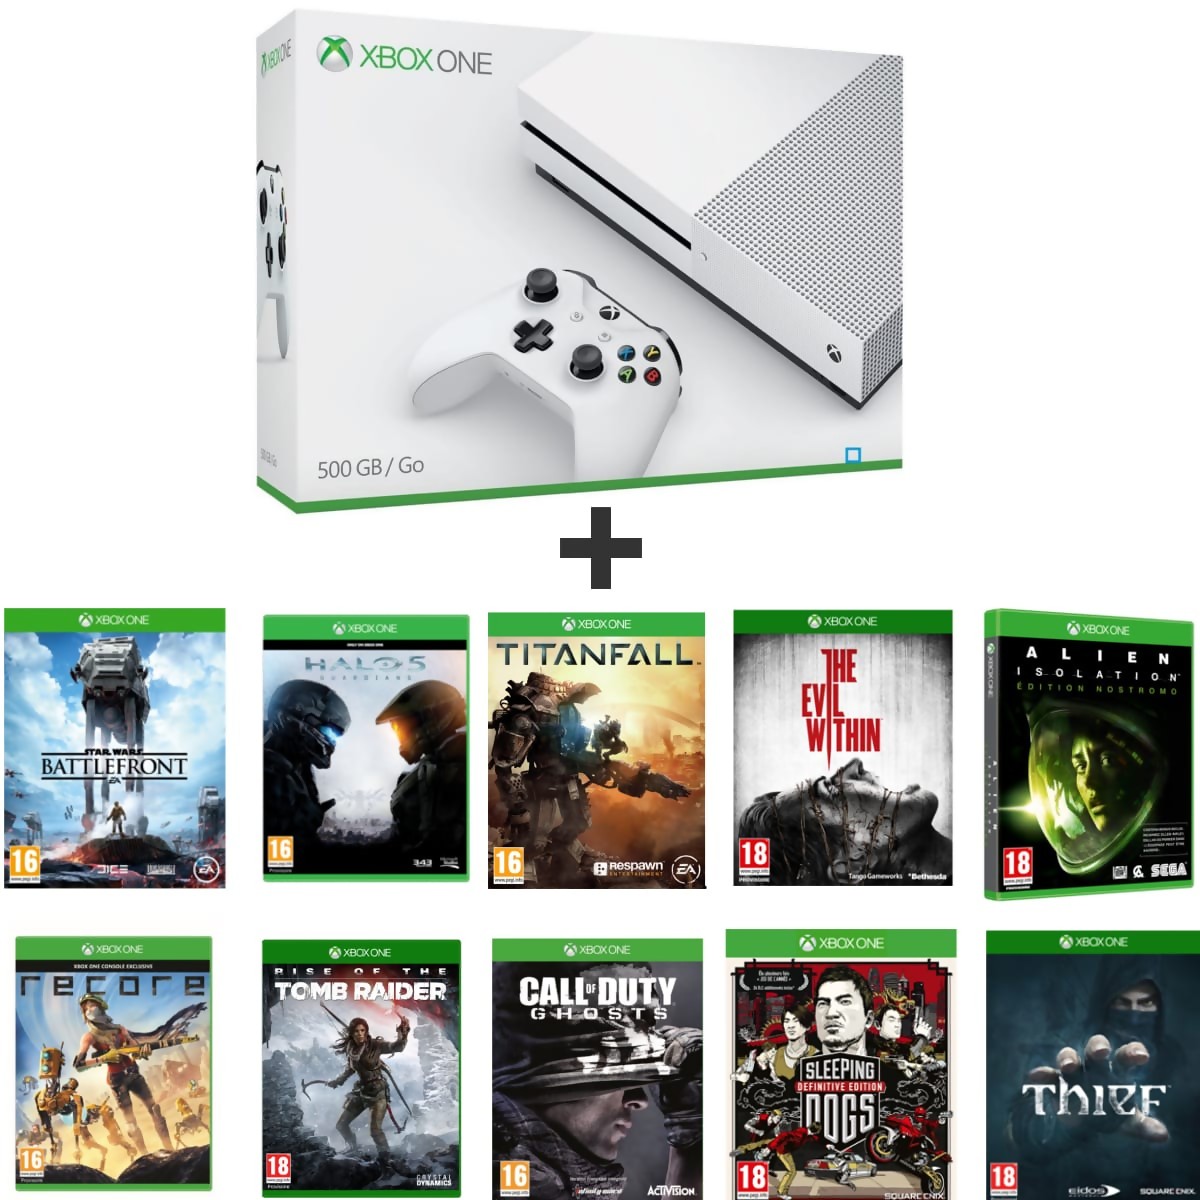 Xbox Series S : : Jeux vidéo